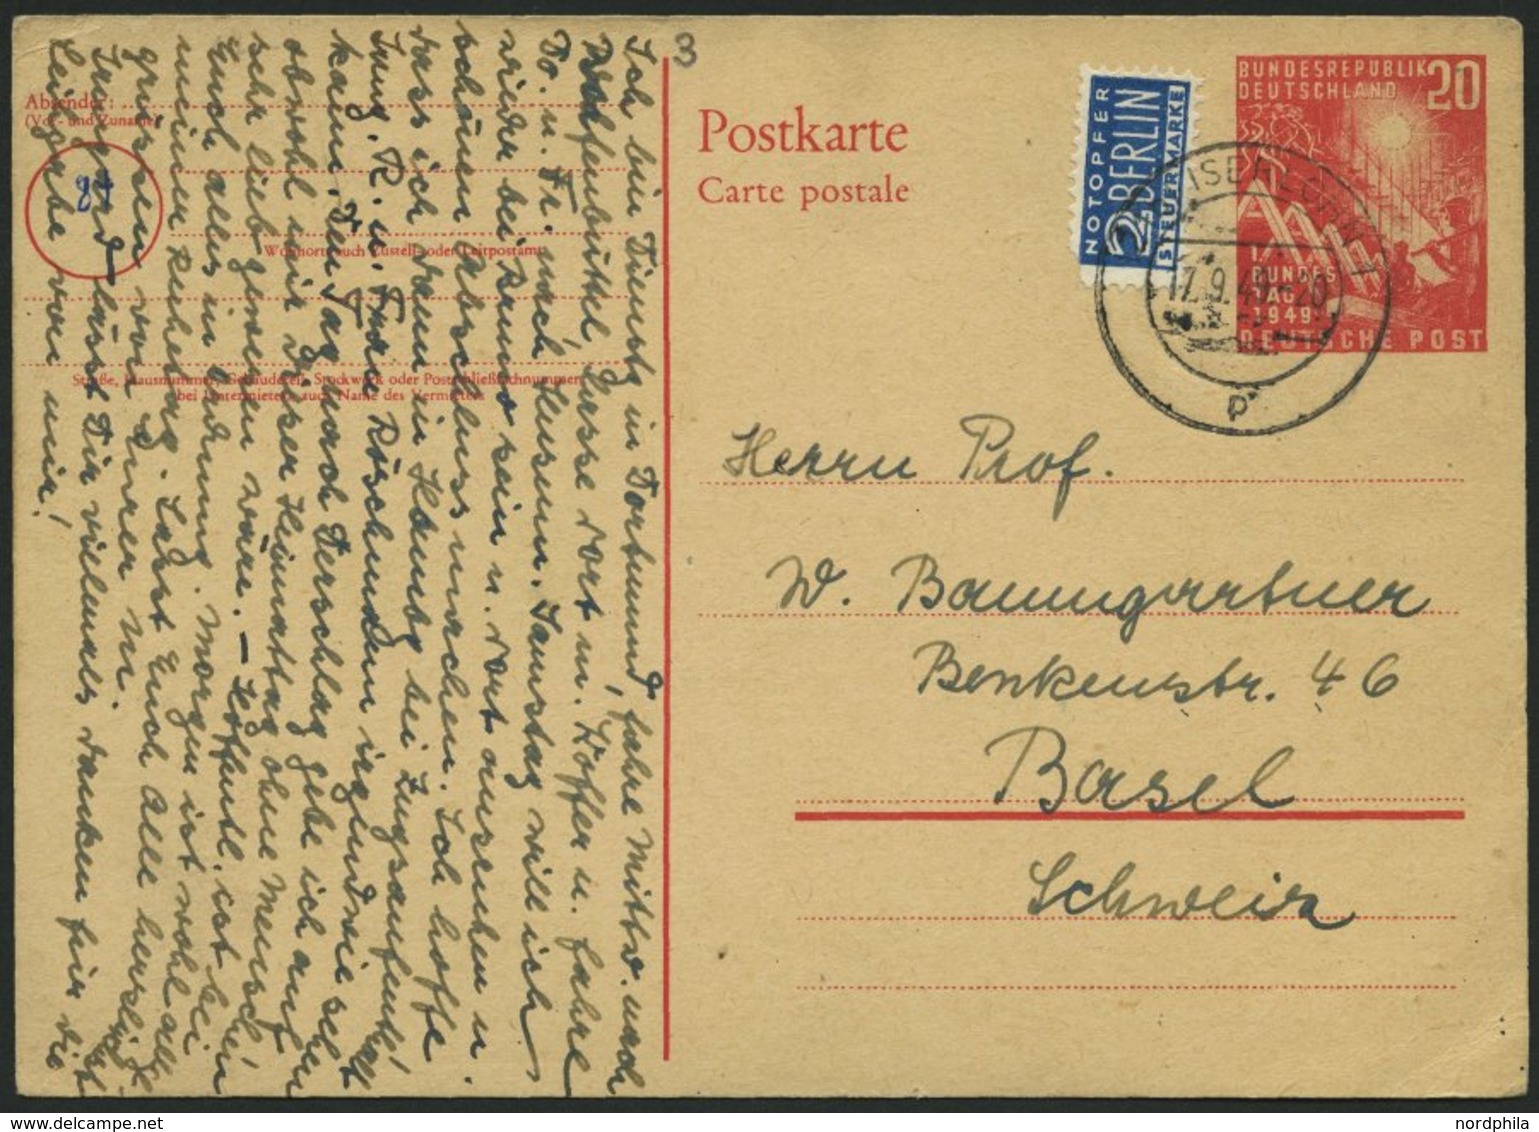 GANZSACHEN PSo 2 BRIEF, 1949, 20 Pf. Bundestag, Bedarfskarte In Die Schweiz, Pracht, Mi. 150.- - Colecciones